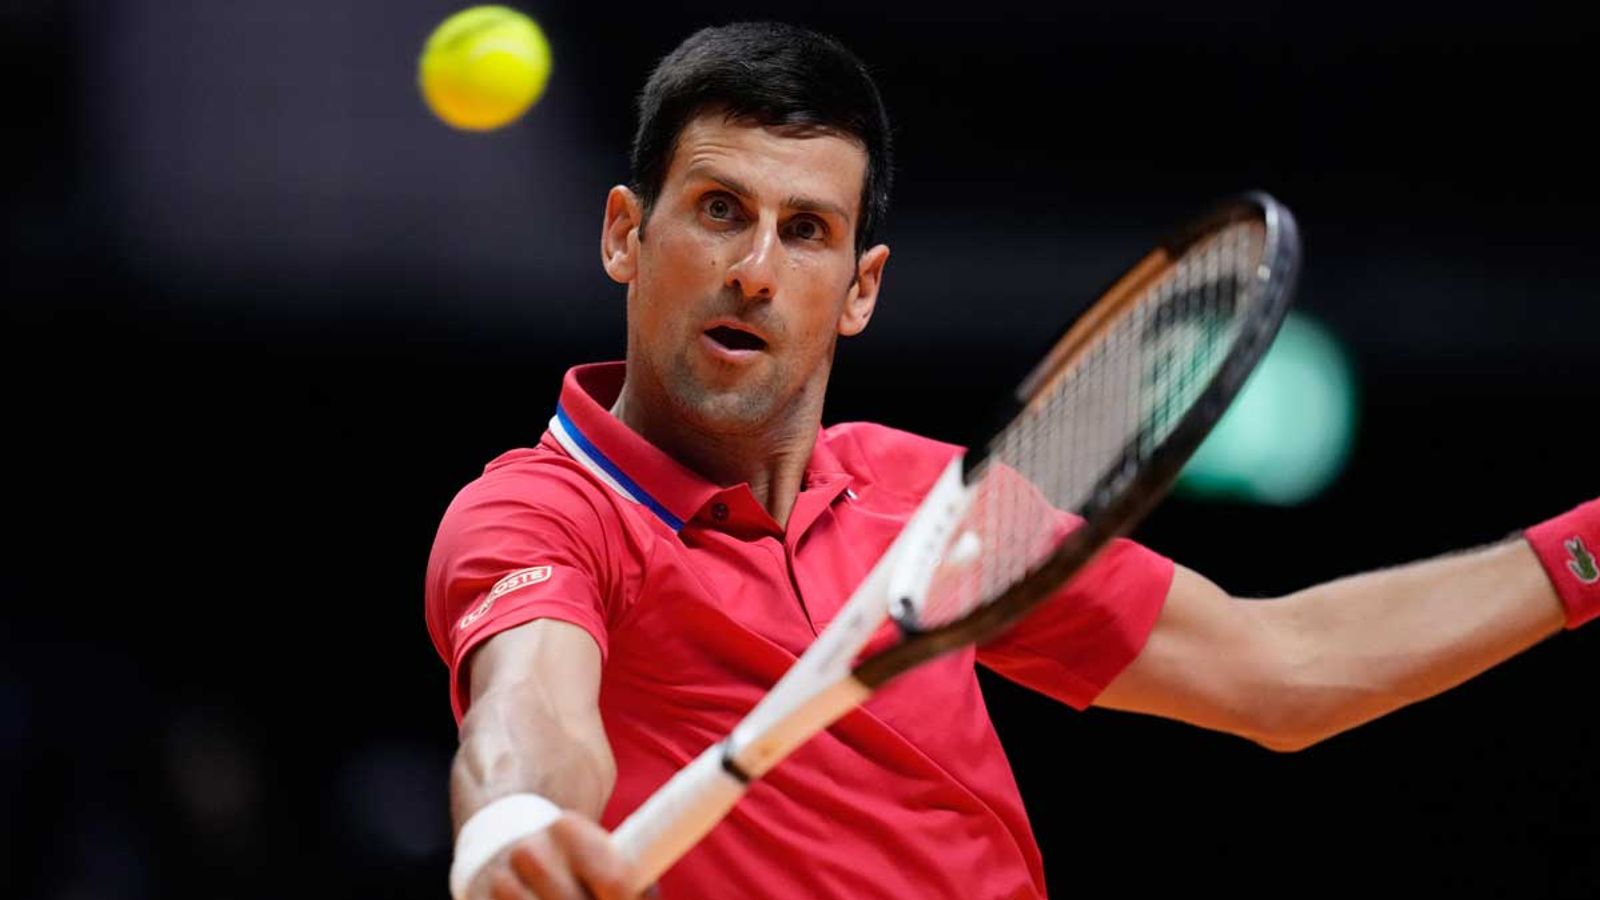 Tennis Novak Djokovic hofft auf warmen Empfang bei Australian Open Tennis News Sky Sport